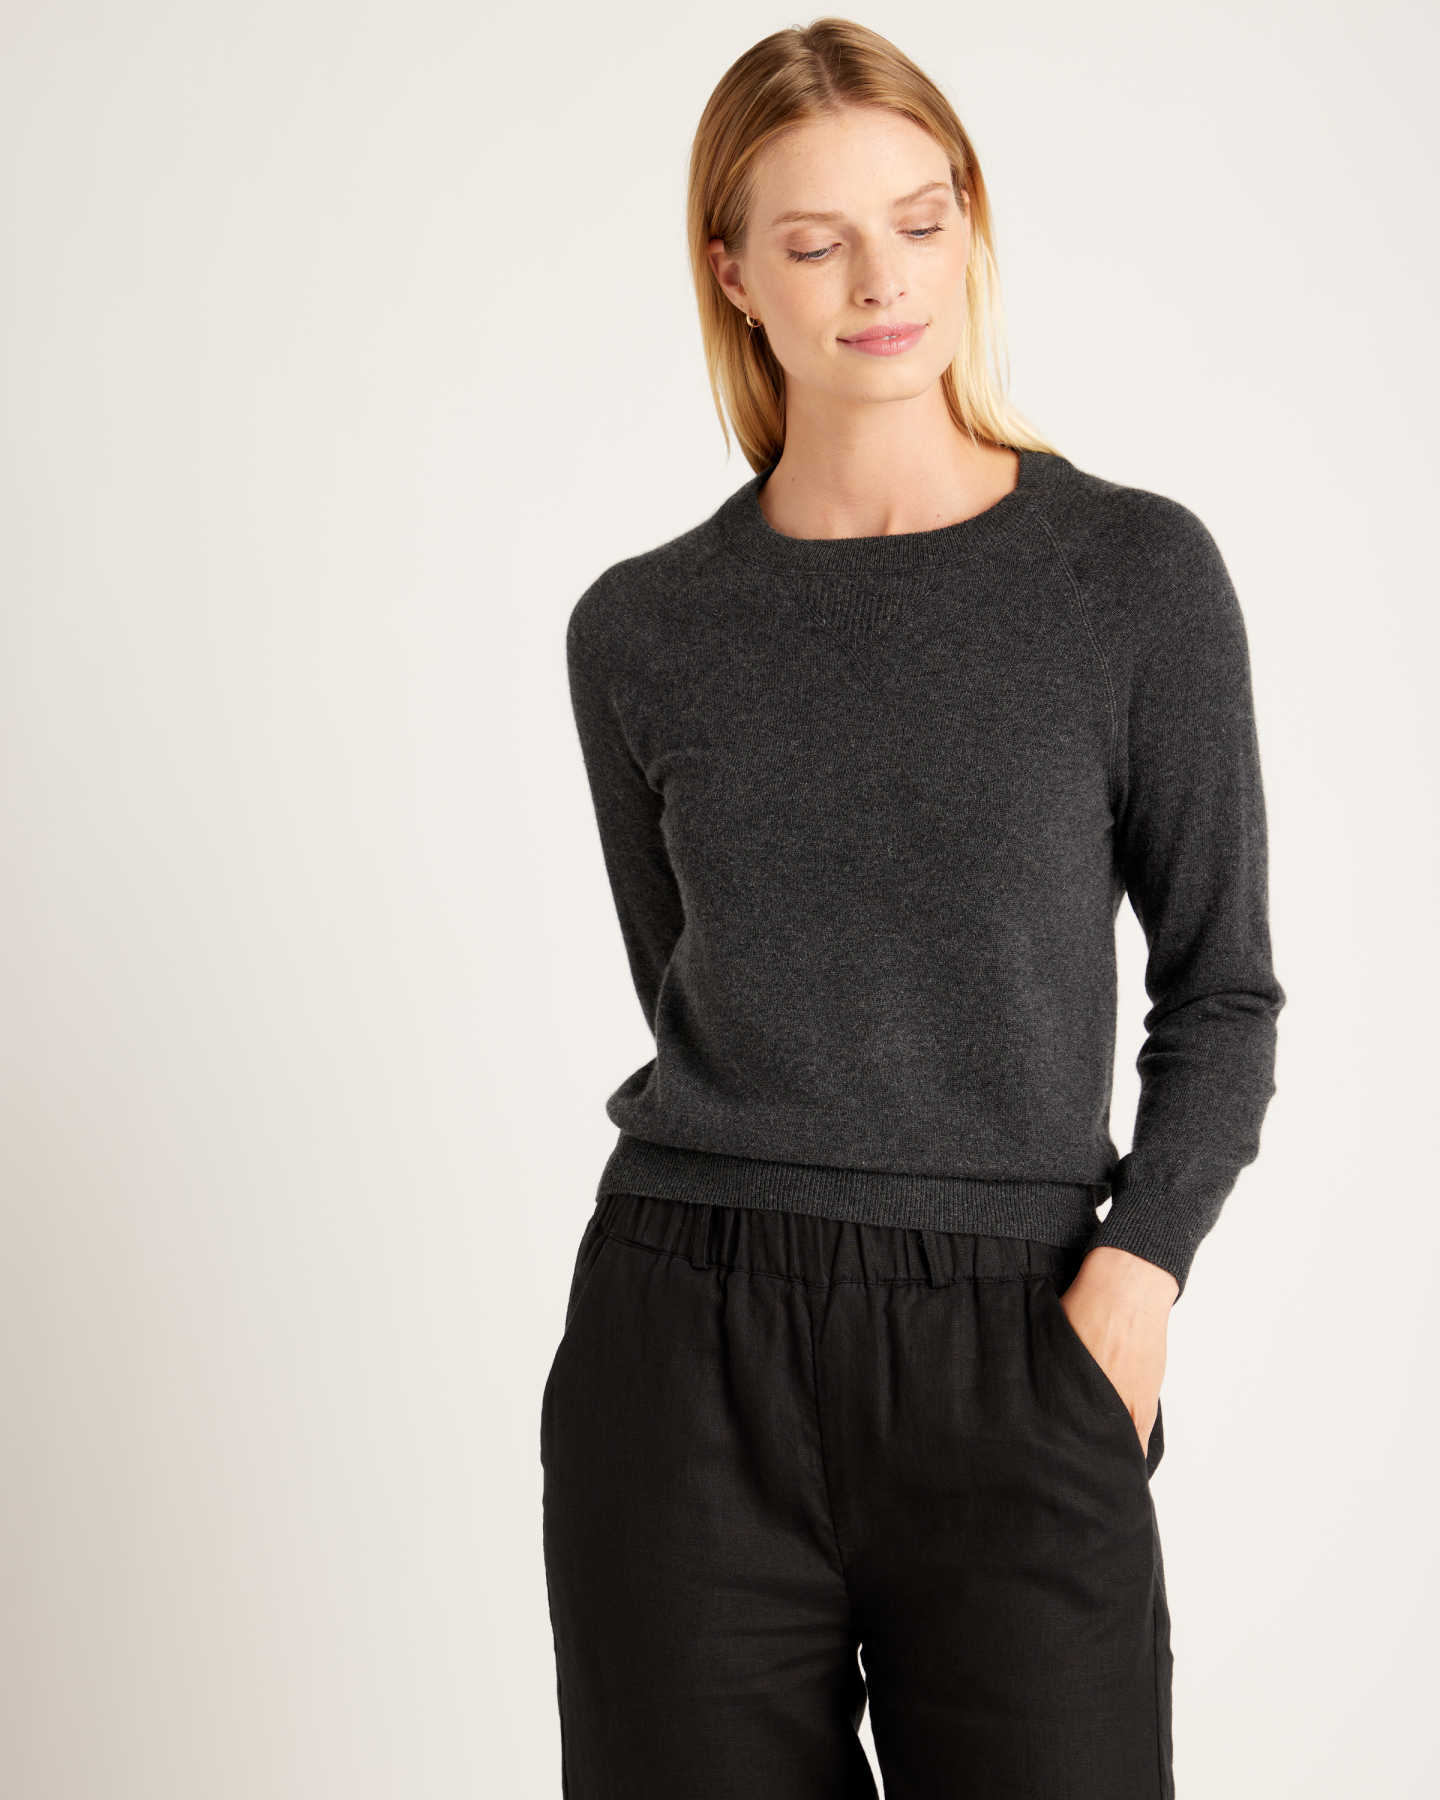 Luxe Baby Cashmere Sweatshirt - Charcoal